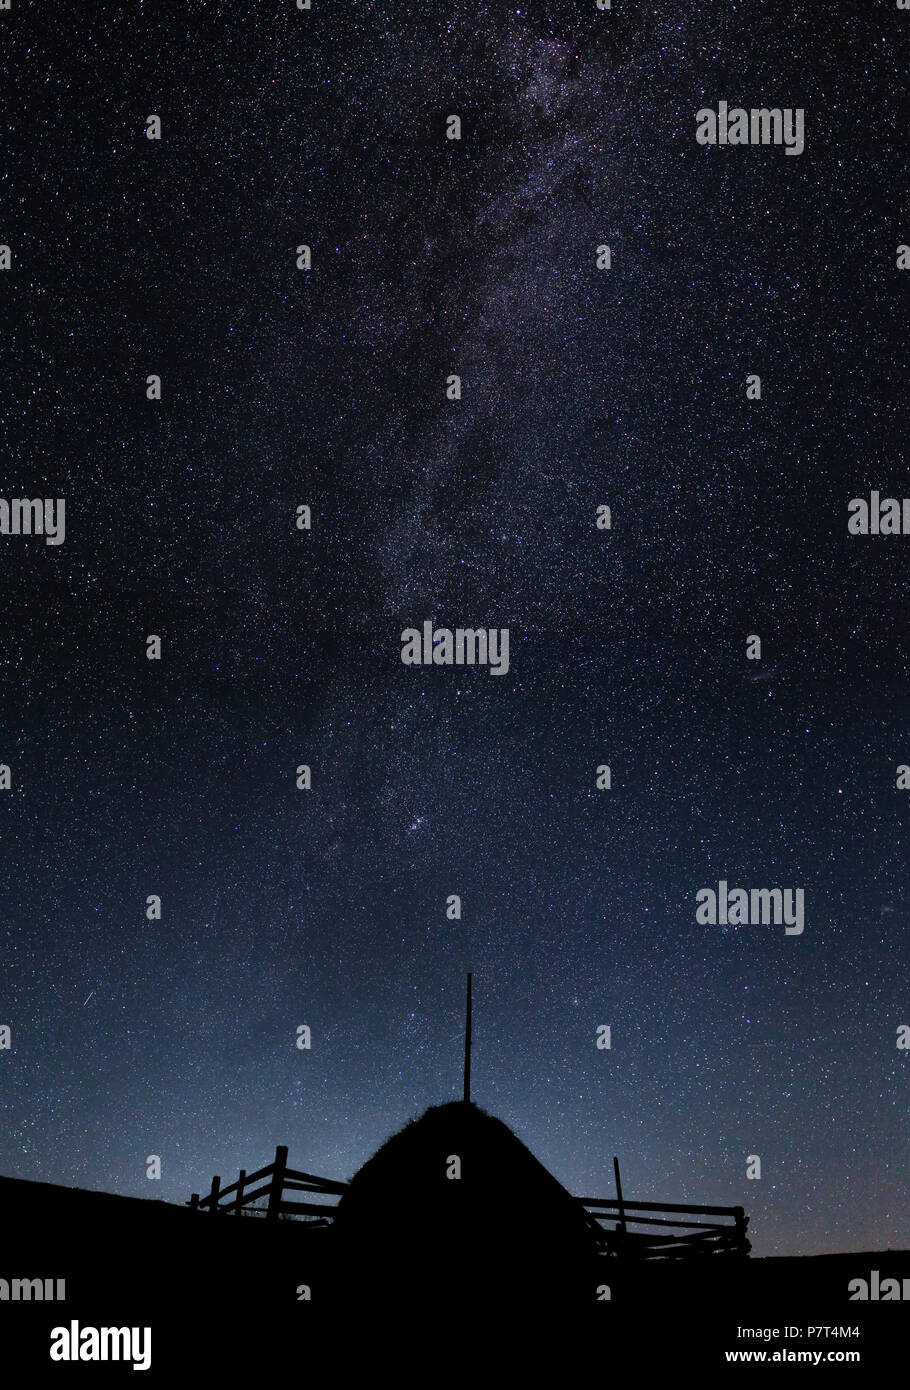 Silhouette d'une pile de paille contre le ciel de nuit avec les étoiles et la Voie lactée visible Banque D'Images